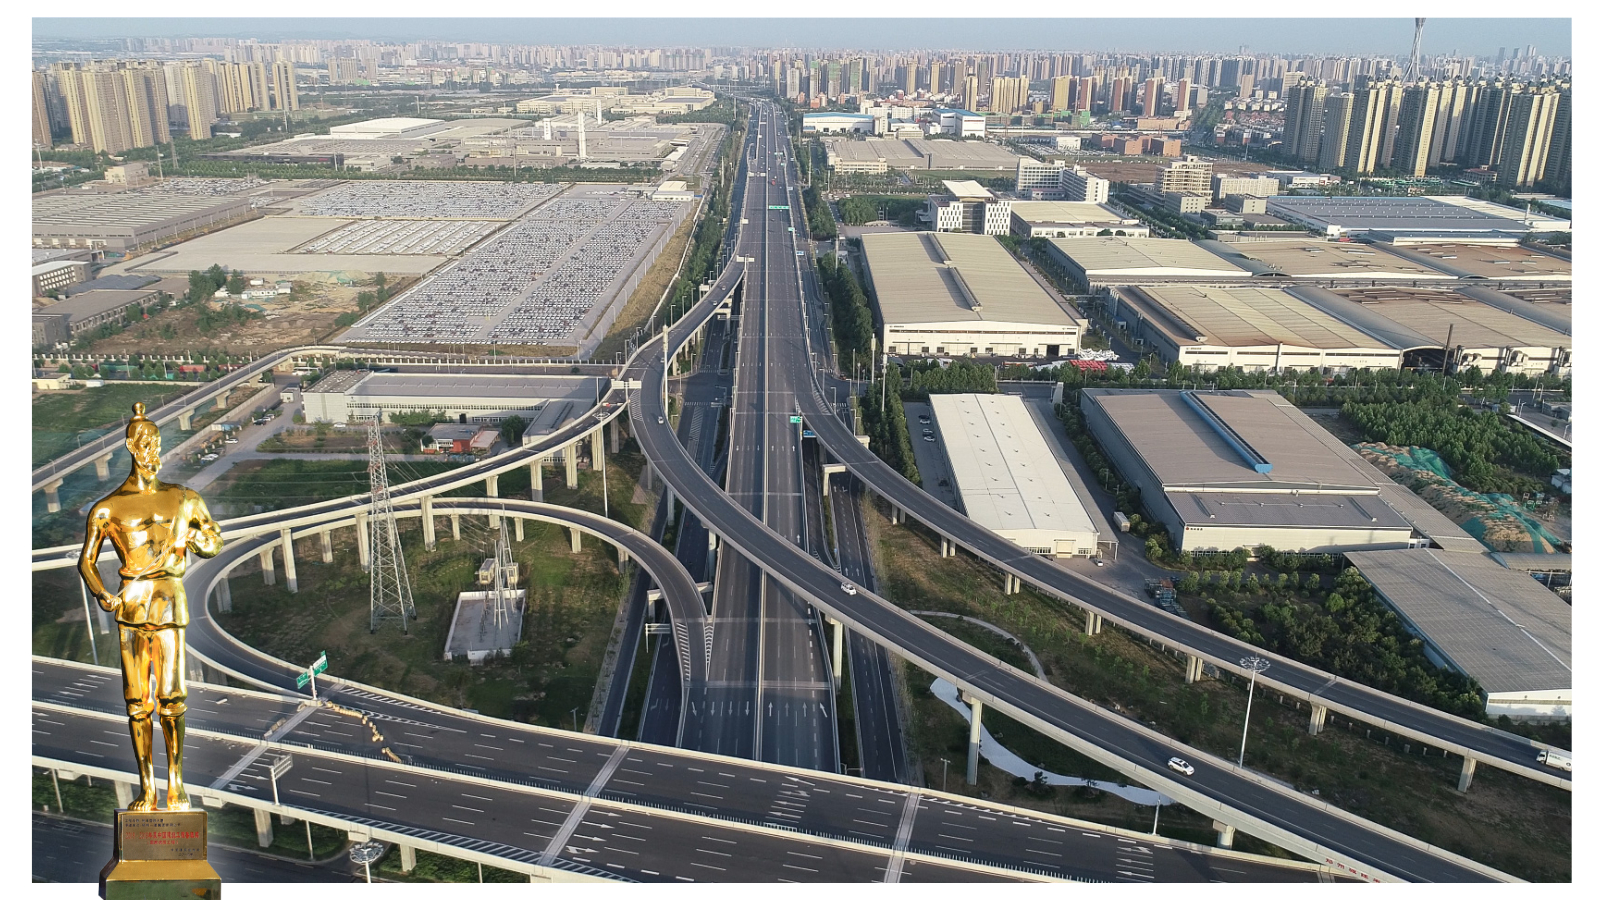 【2018-2019年度鲁班奖工程】南三环东延工程，是郑州构建“大井字+环形”快速骨干路网体系的重要组成部分，是全线高架桥城市快速路工程。